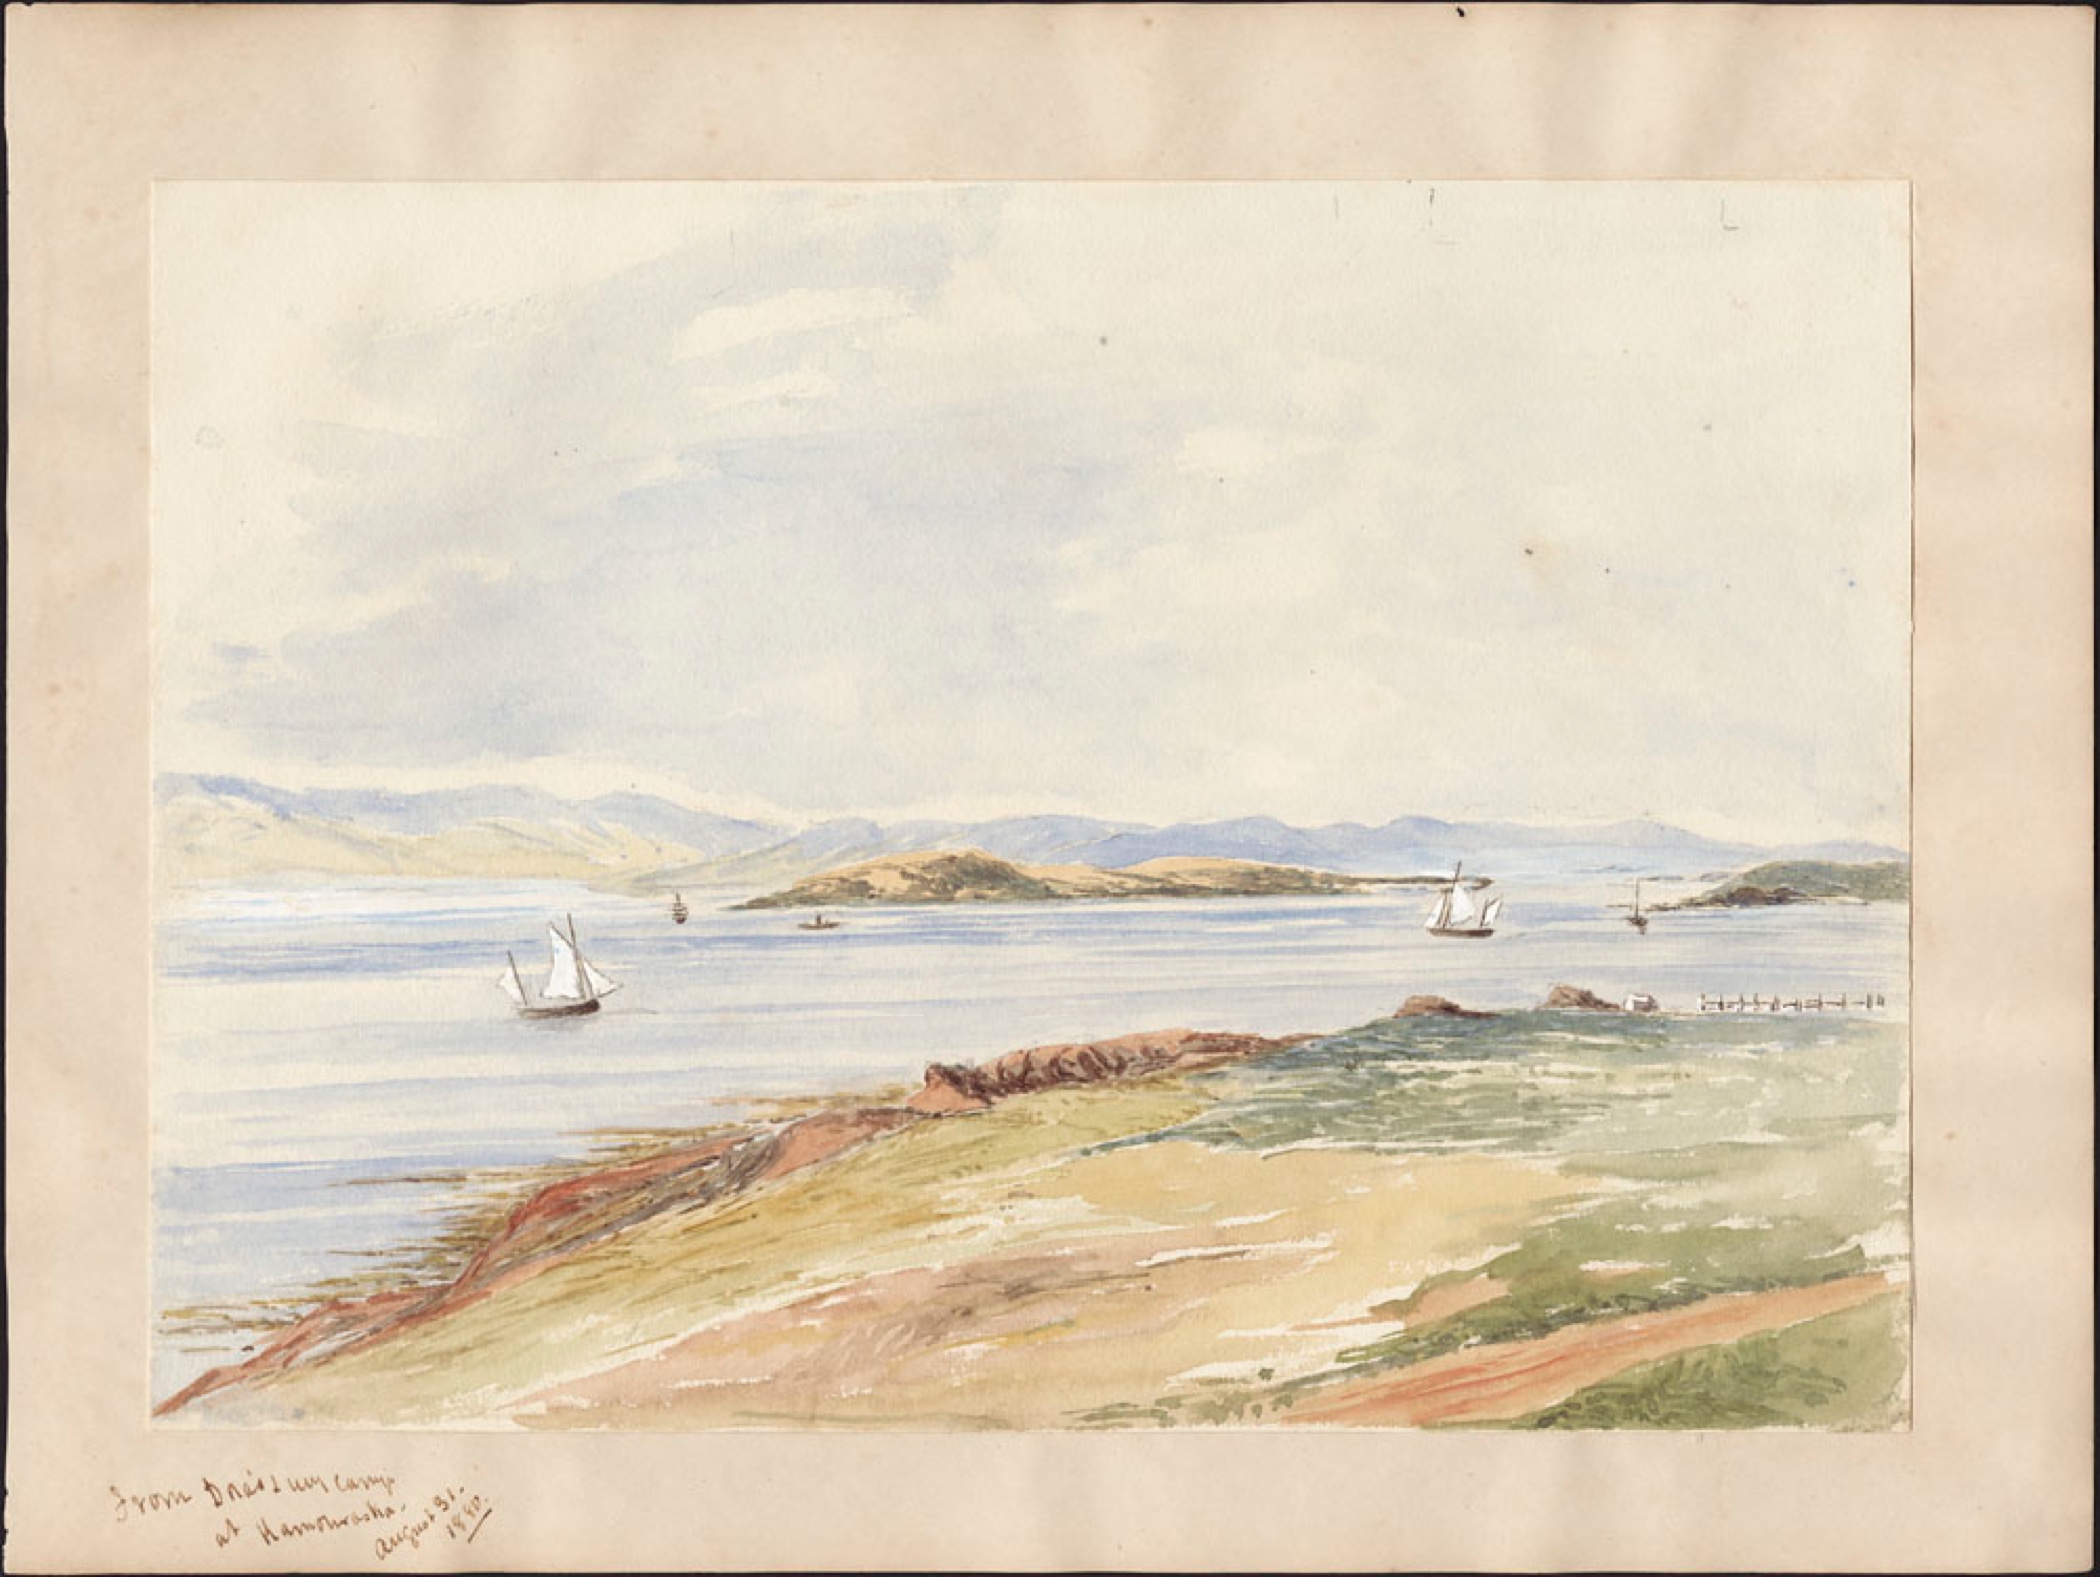 Une aquarelle aux tons pâles représentant une vue sur le fleuve avec un chemin de terre au premier plan, des voiliers voguant sur l'eau; au loin, une île et la côte sous un ciel incolore. 